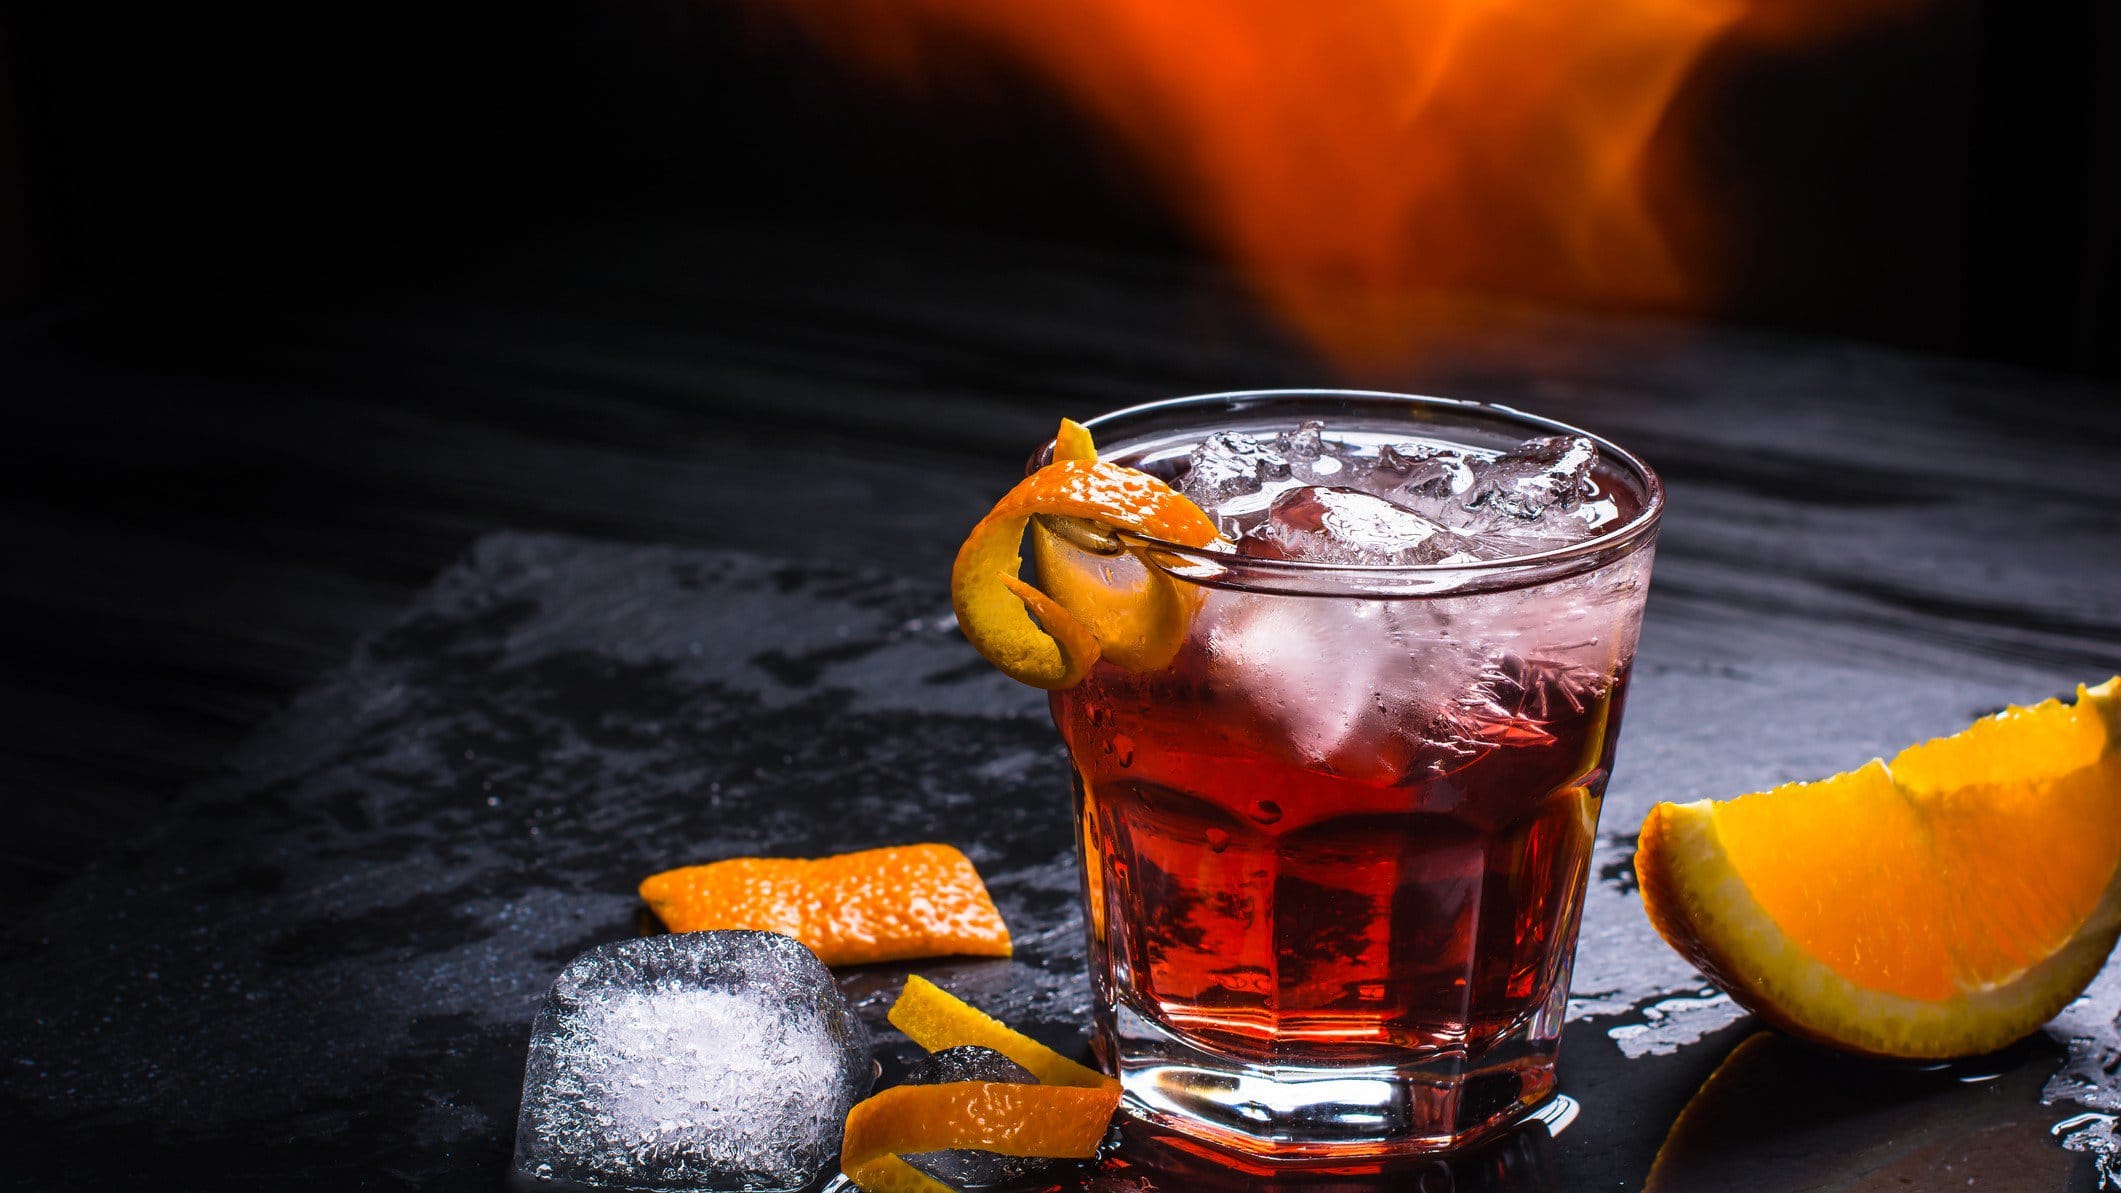 Mezzoni Cocktail mit Mezcal wie Negroni mit Eis und Orangenschale auf schwarzem Untergrund. Einswürfel und Orange als Dekoration im Bild. Flammen über dem Shortdrink. Frontalansicht.